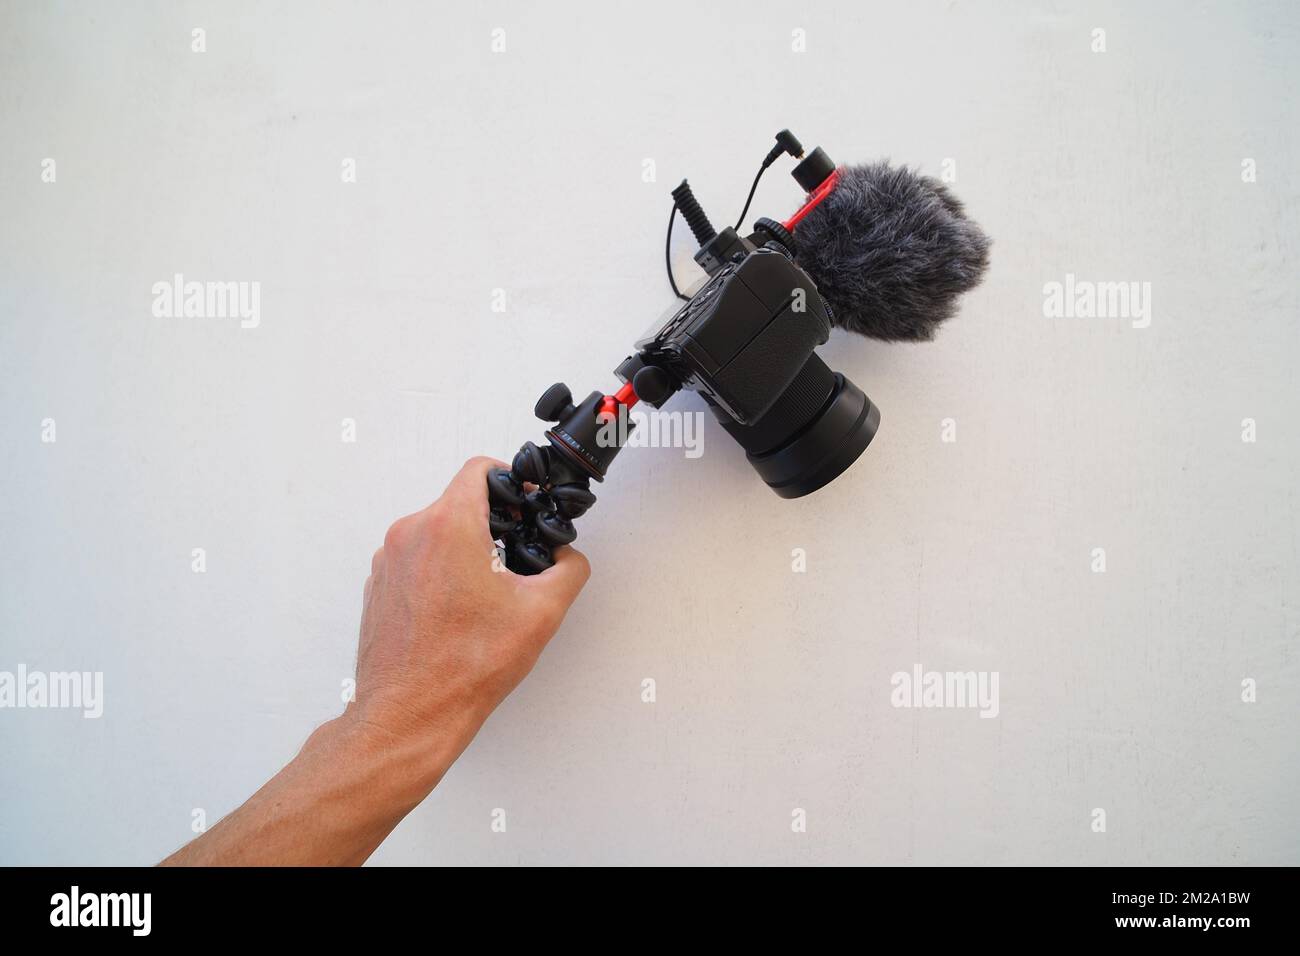 Fotocamera digitale con microfono in mano. Concetto di blogger. Foto Stock